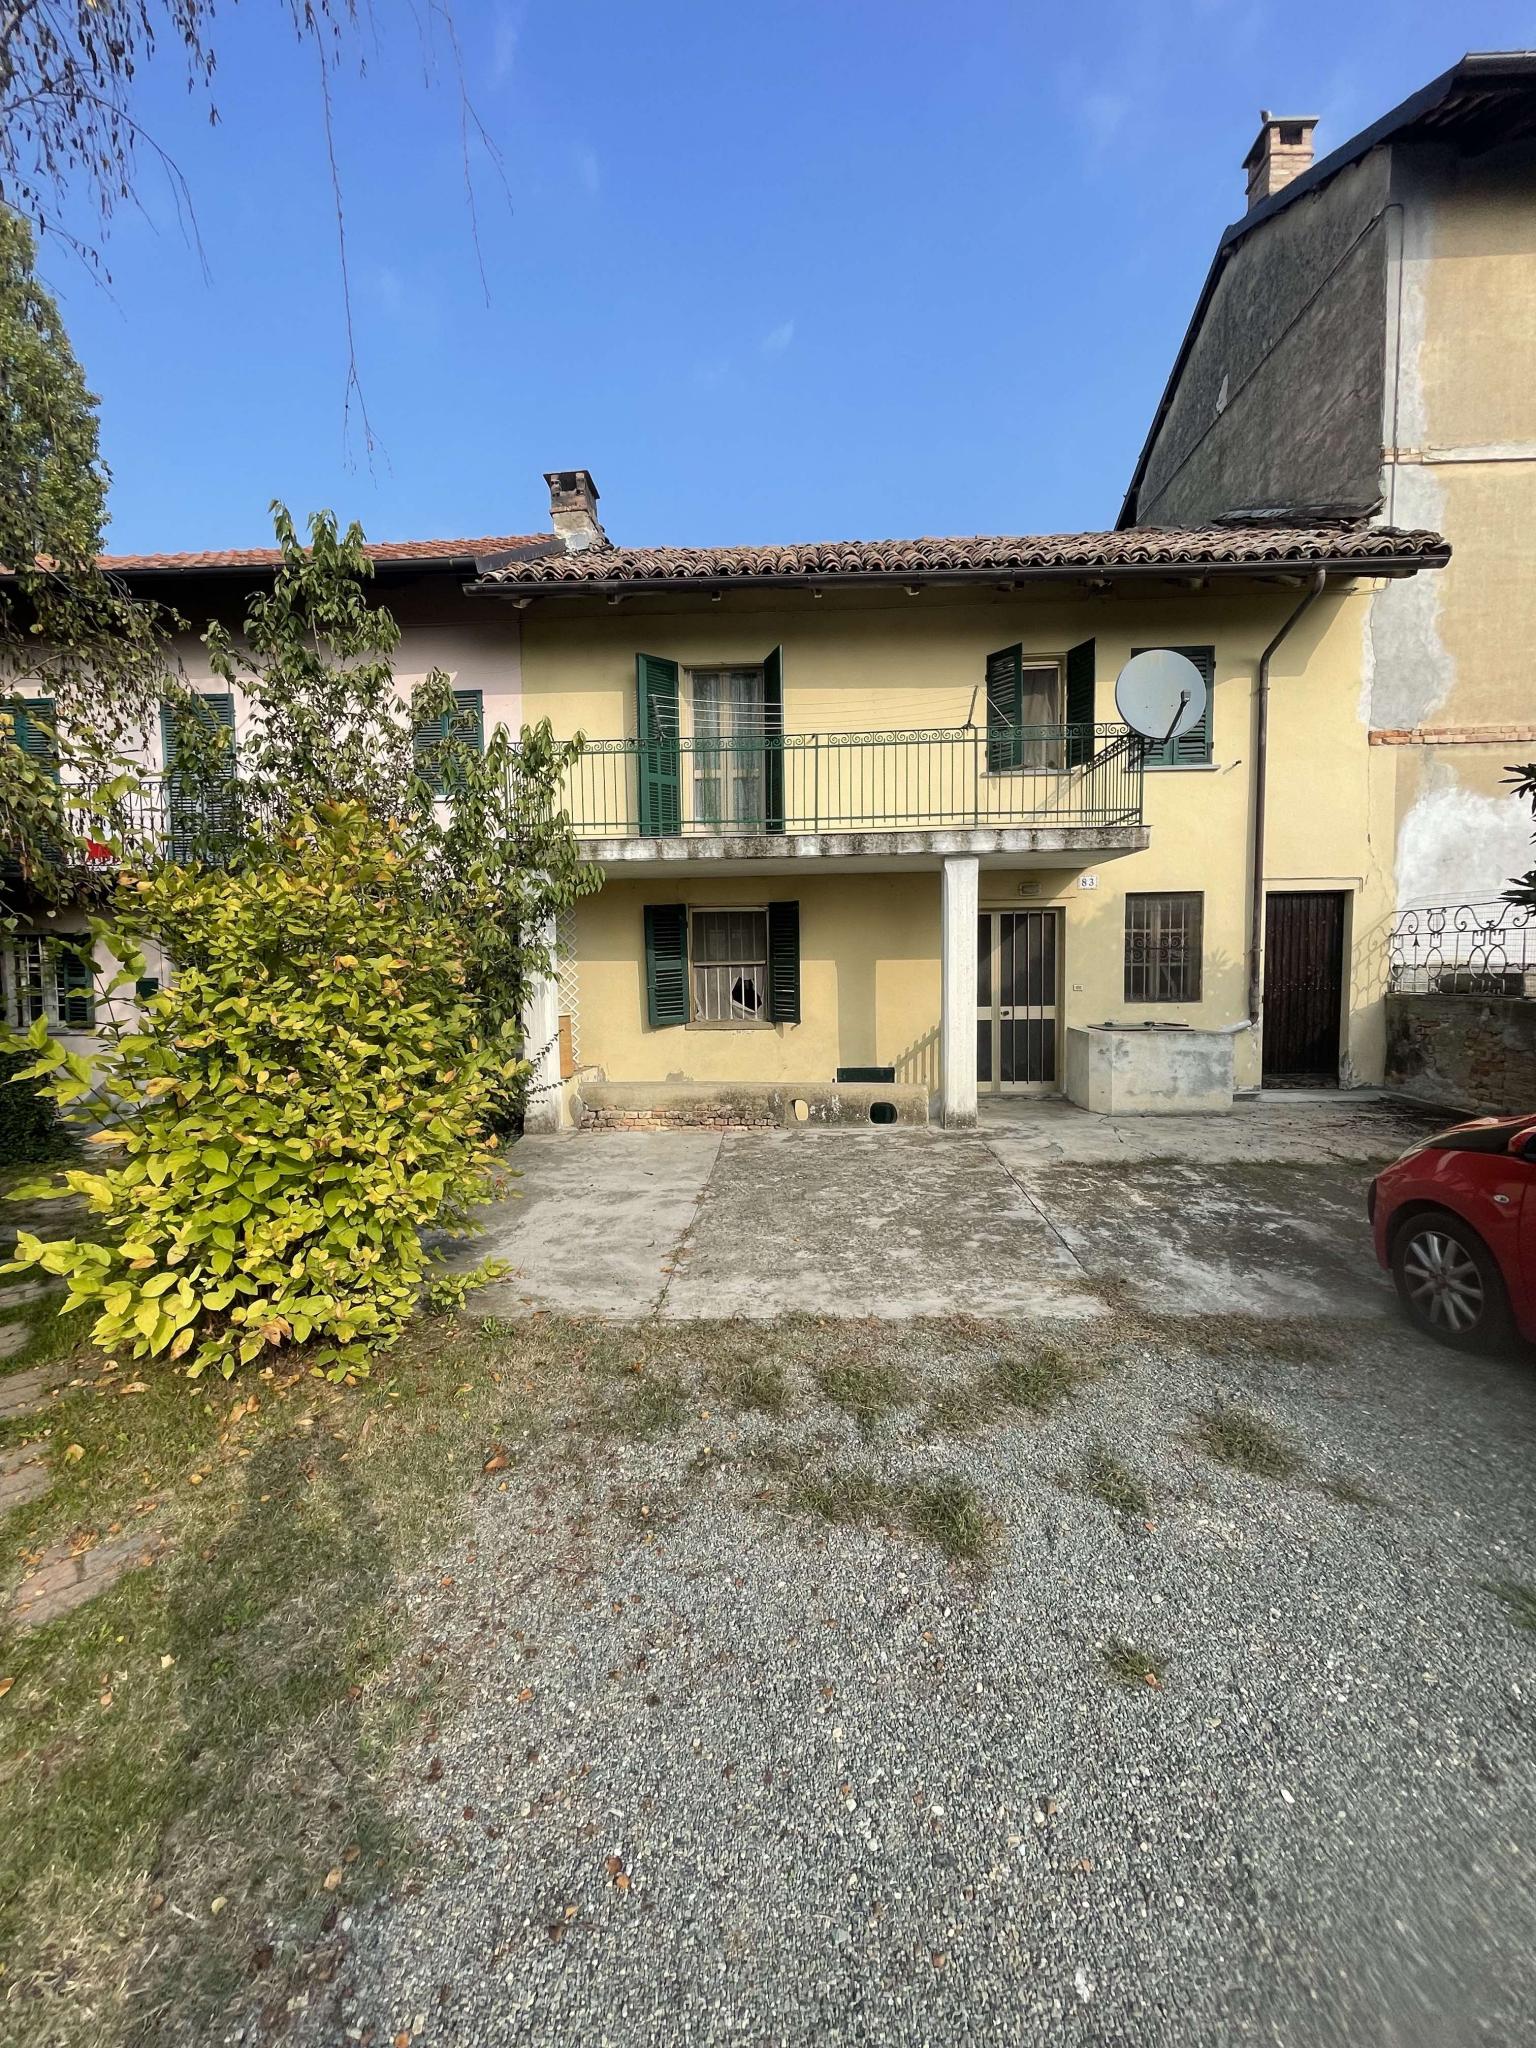 Vendita Casa Indipendente Casa/Villa Agliano Terme STRADA fornaci stazione 83 393863